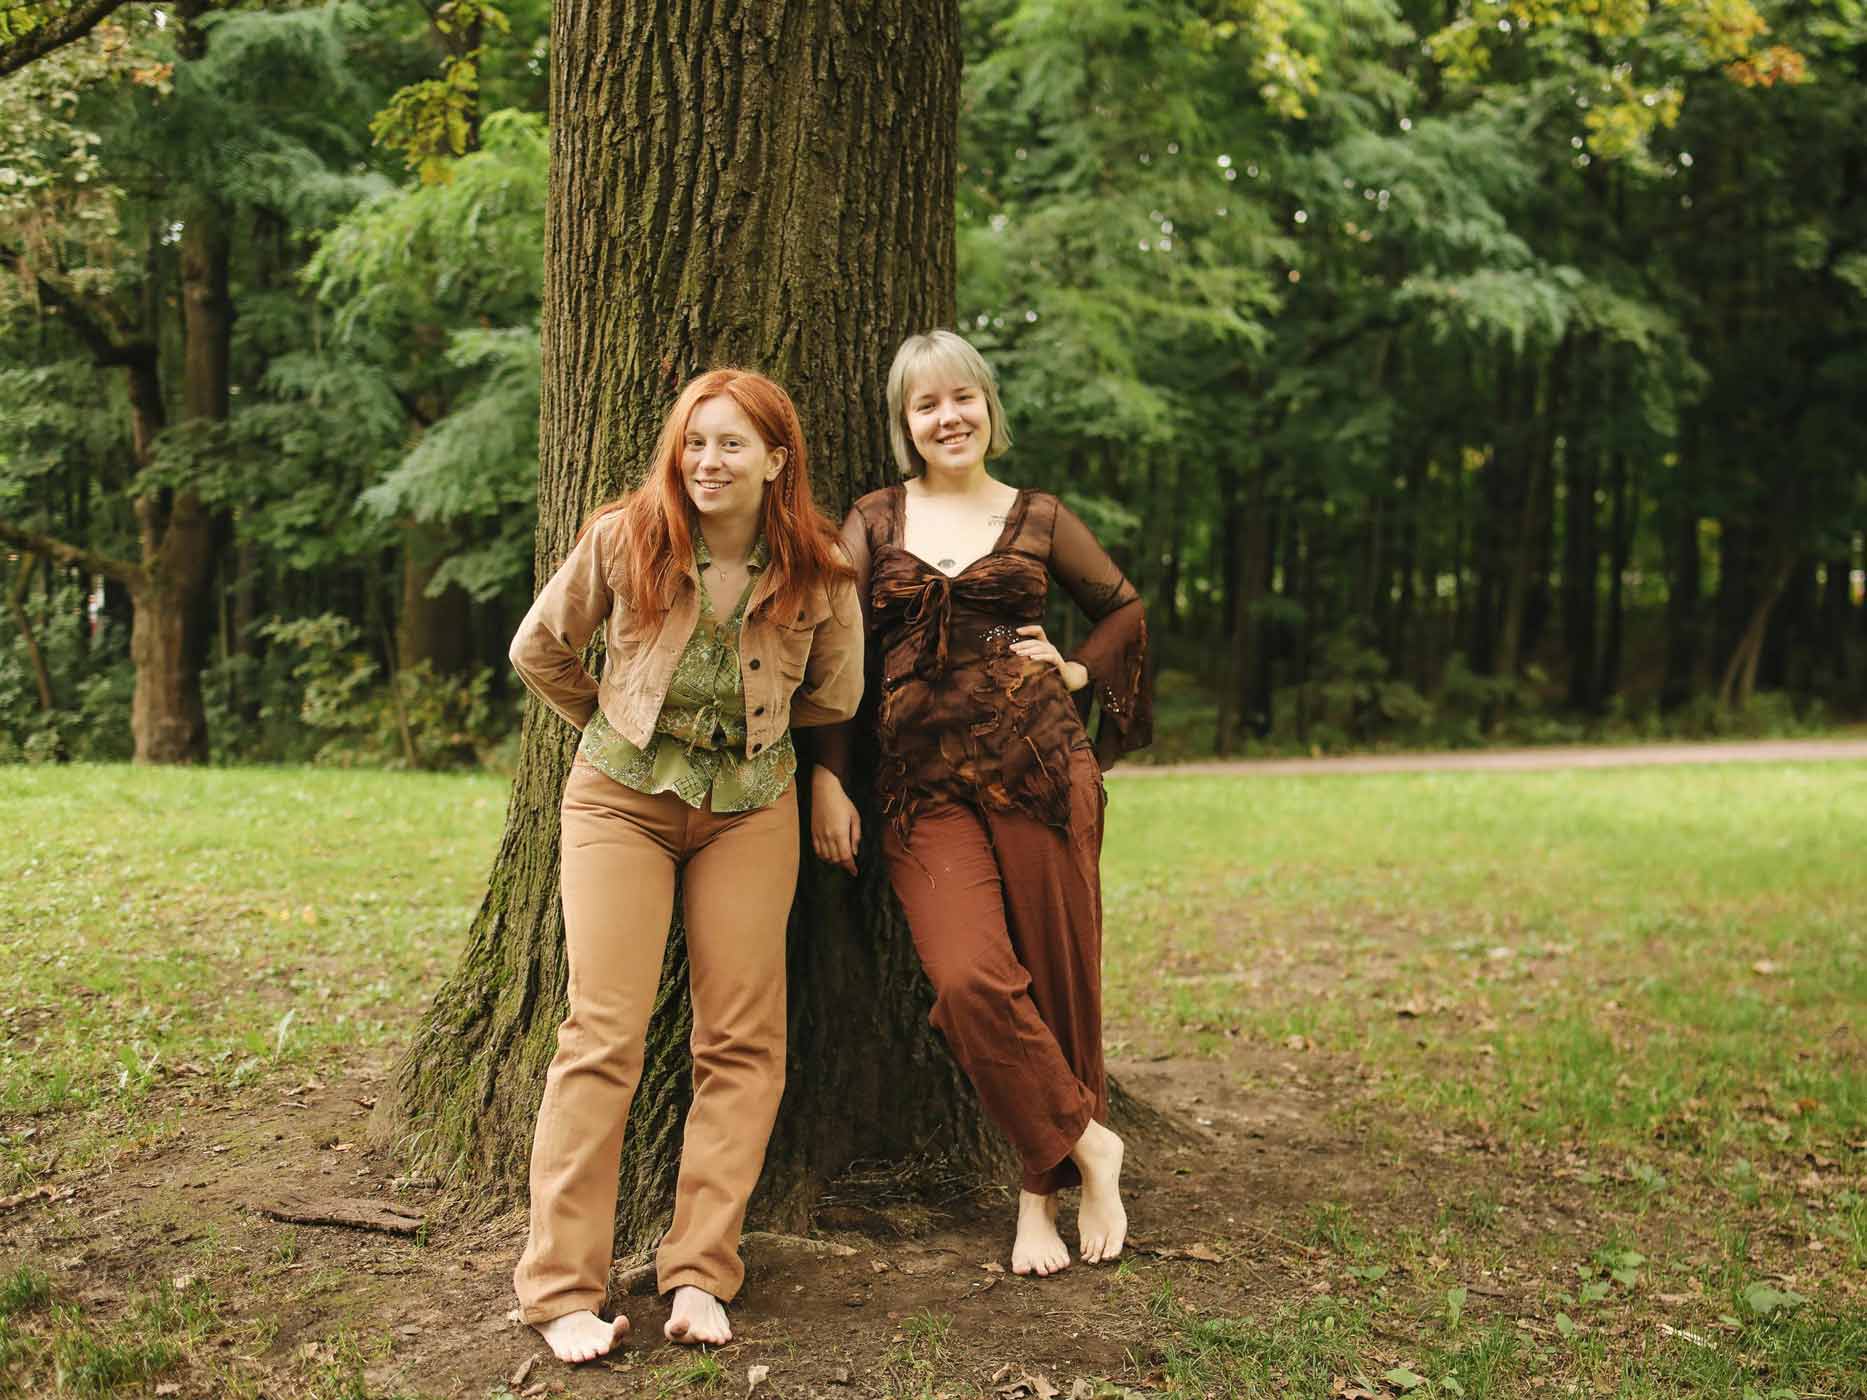 Zwei Frauen lehnen sich an einen Baum und tragen Kleidung in Erdtönen